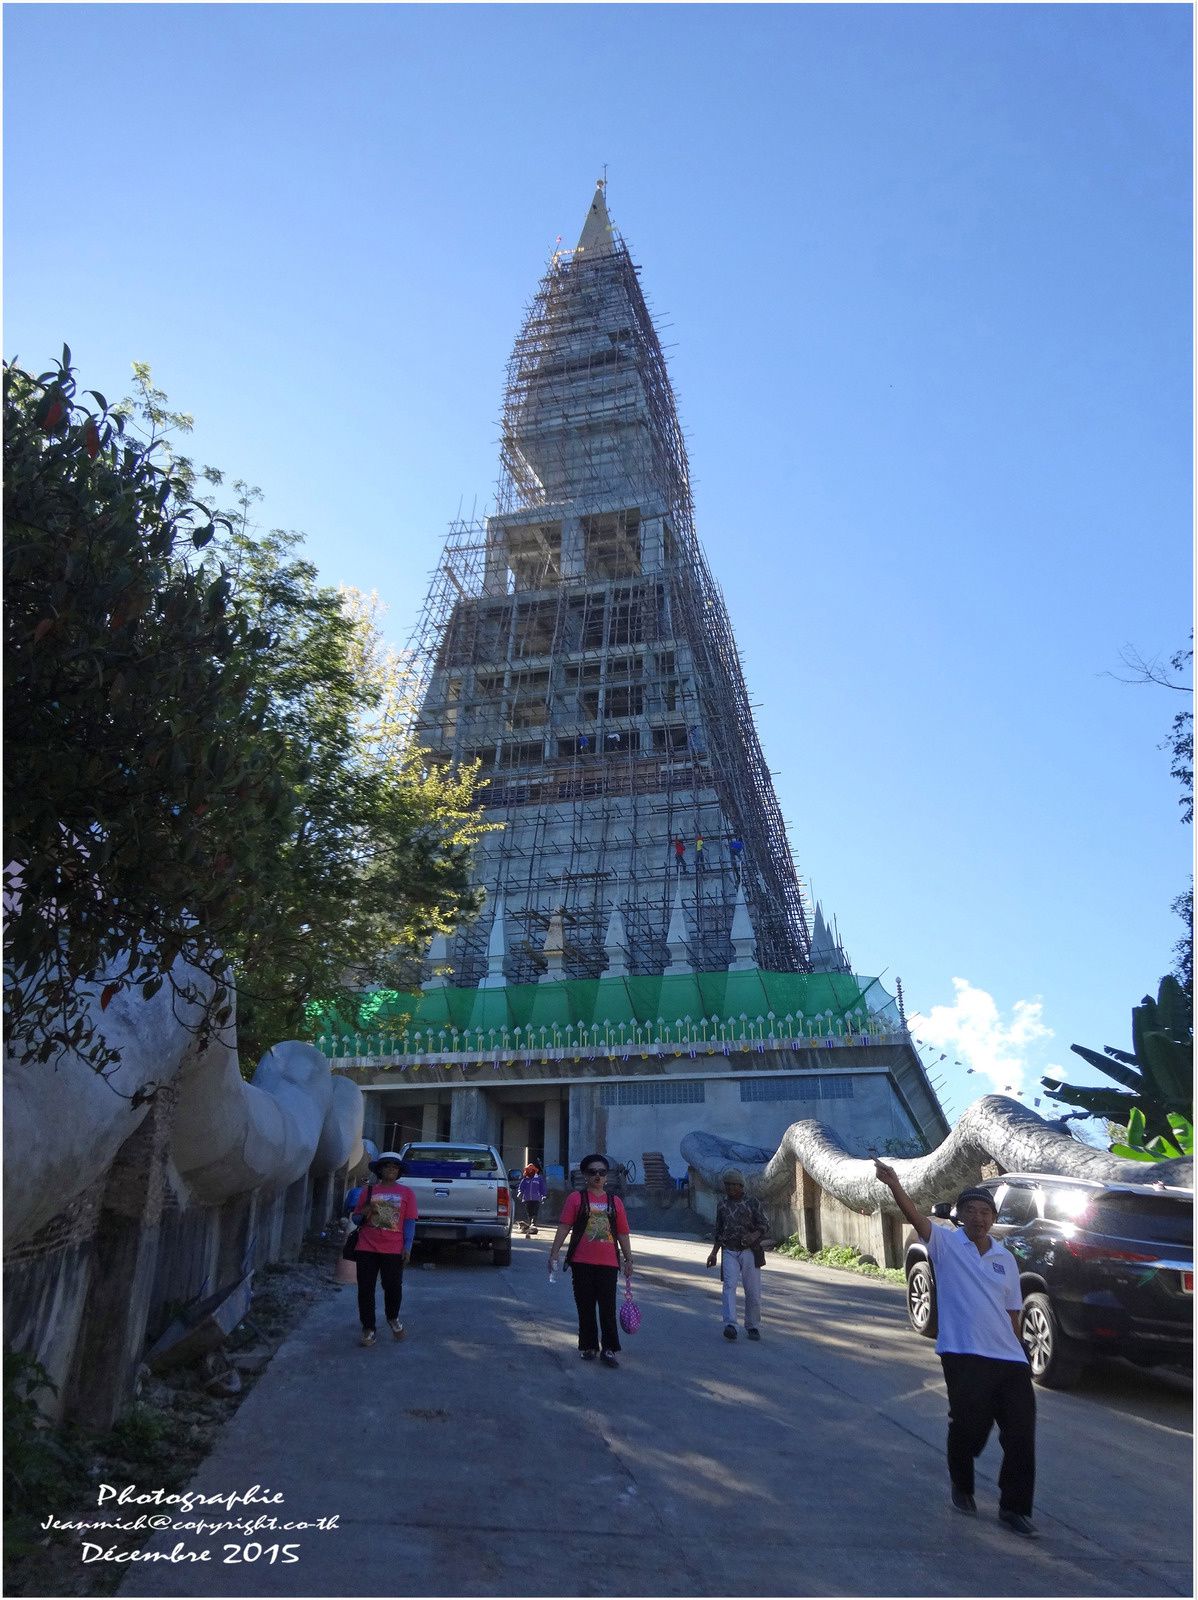 Phu Thap Boek (ภูทับเบิก) un temple en construction.